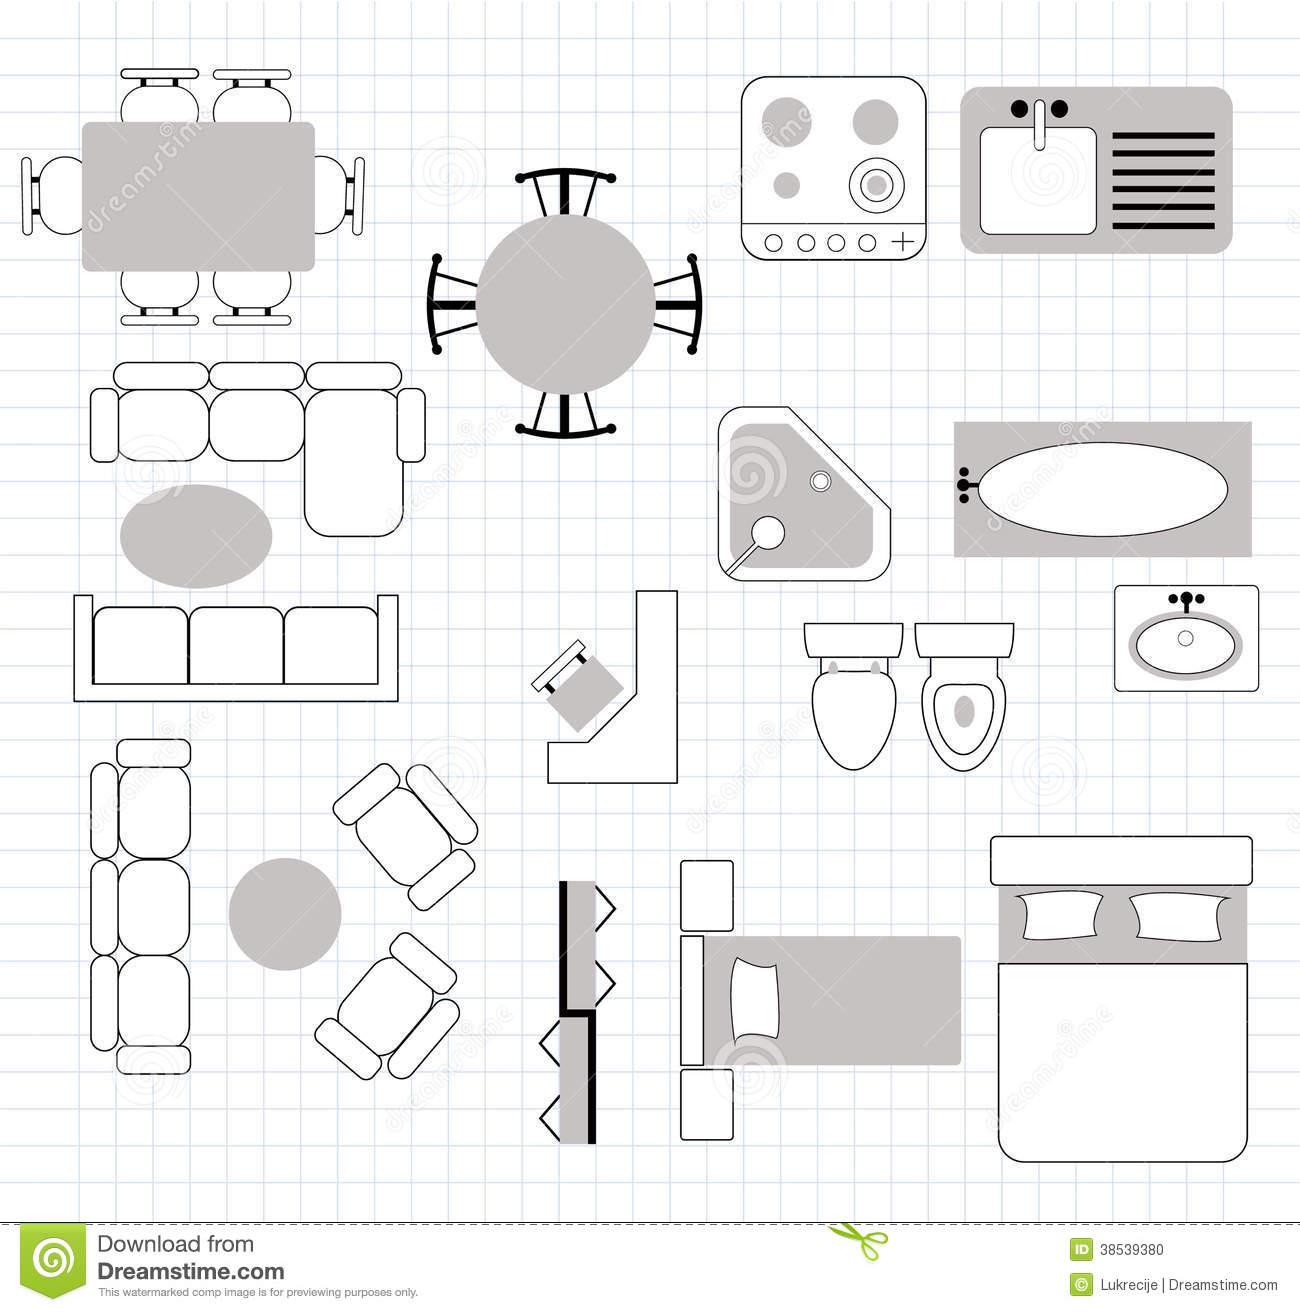 7 Floor Plan Furniture Vector Images Floor Plan with